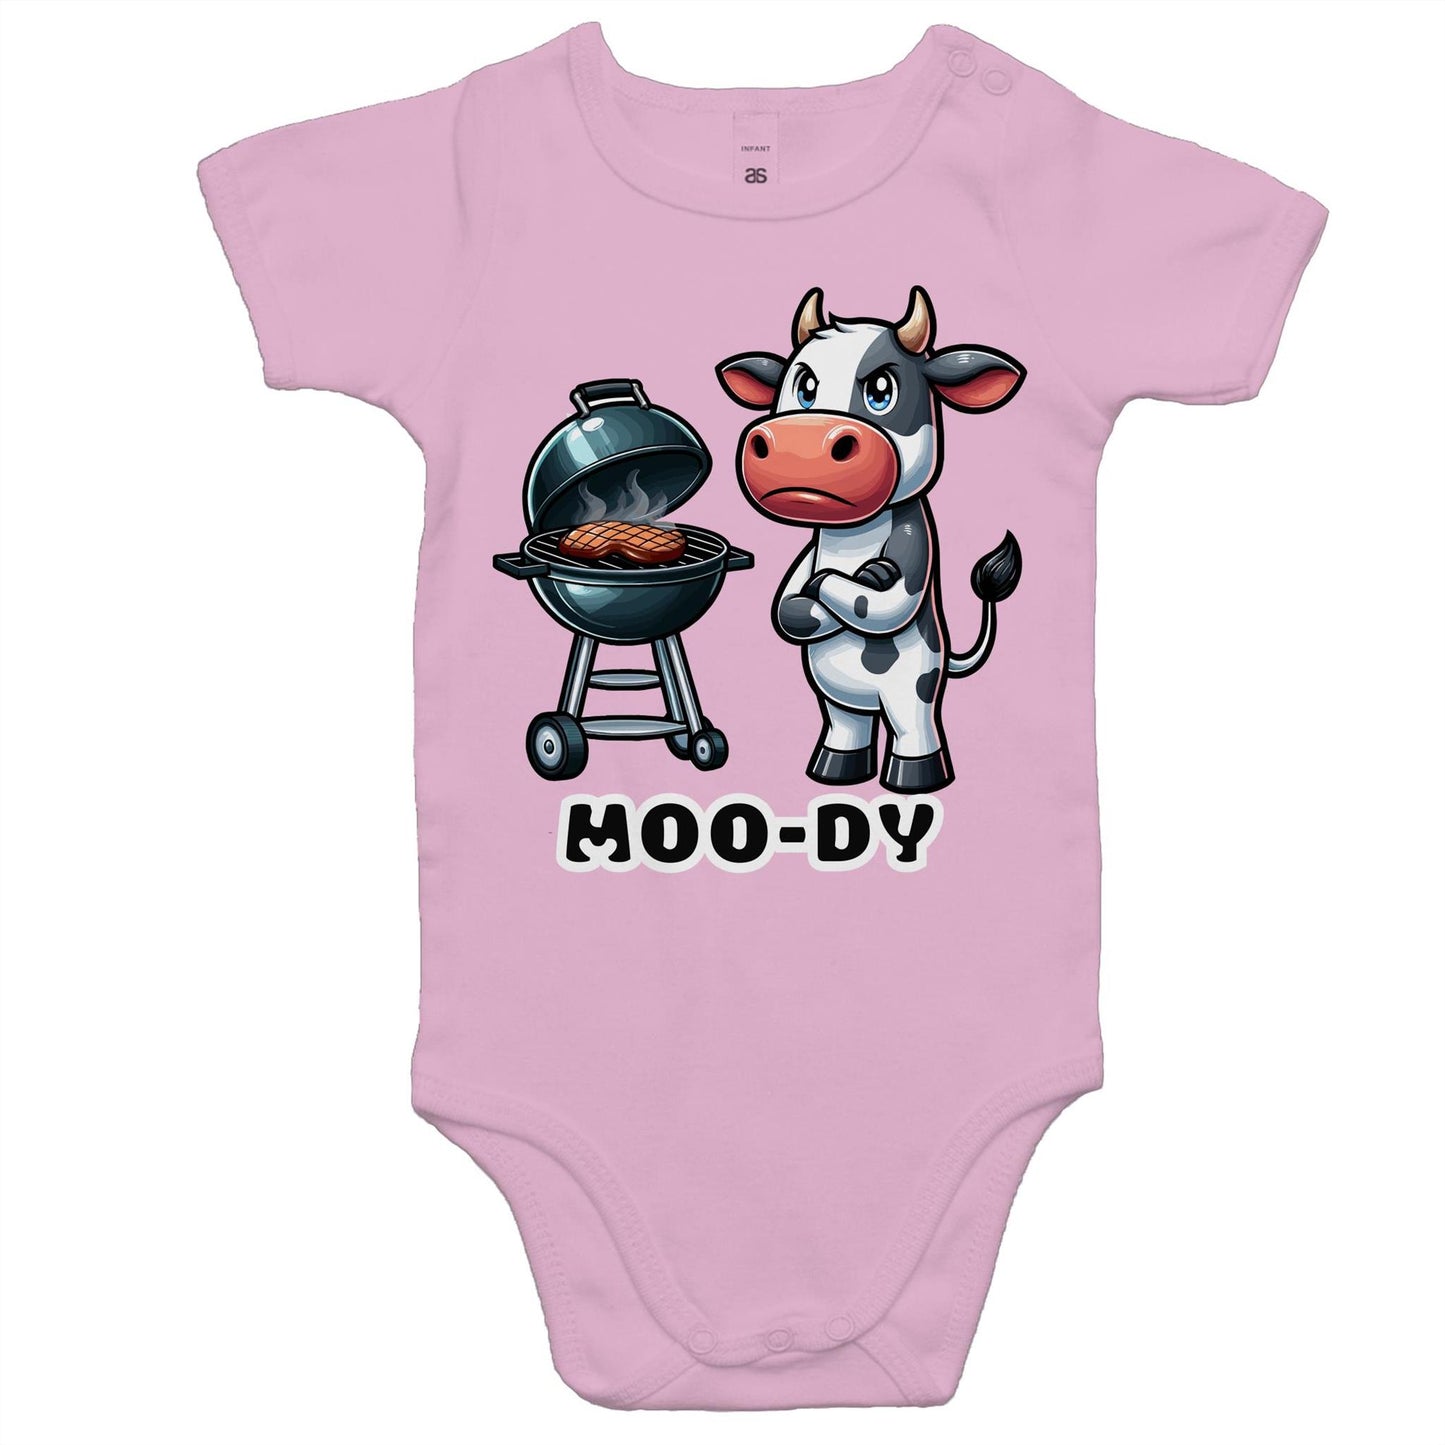 Moody Cow - Baby Onesie Romper